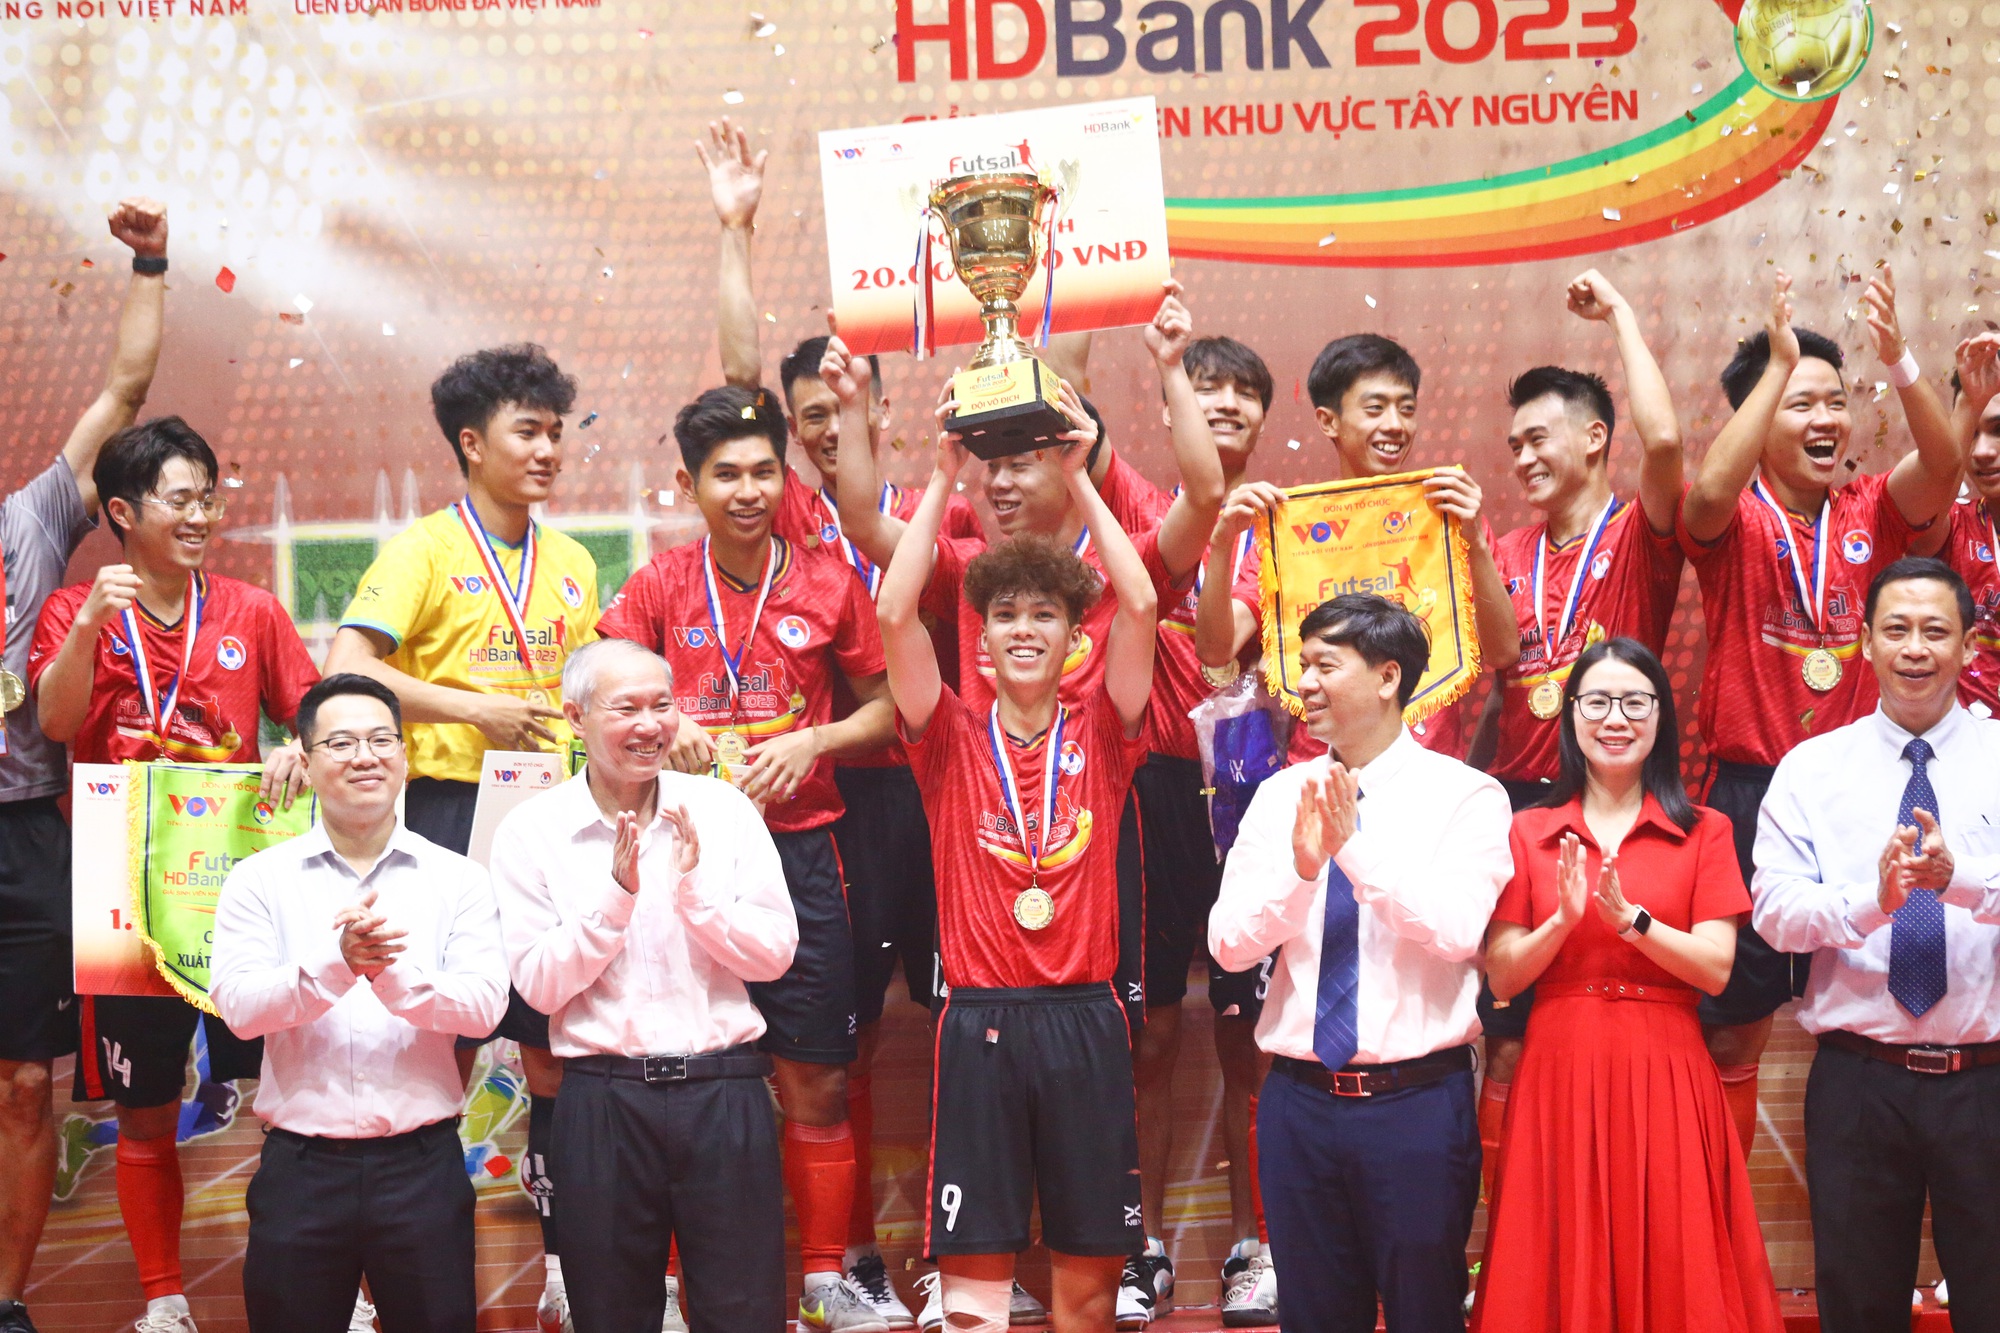 Trường ĐH Đà Lạt vô địch giải futsal HDBank Sinh viên Tây Nguyên 2023 - Ảnh 1.